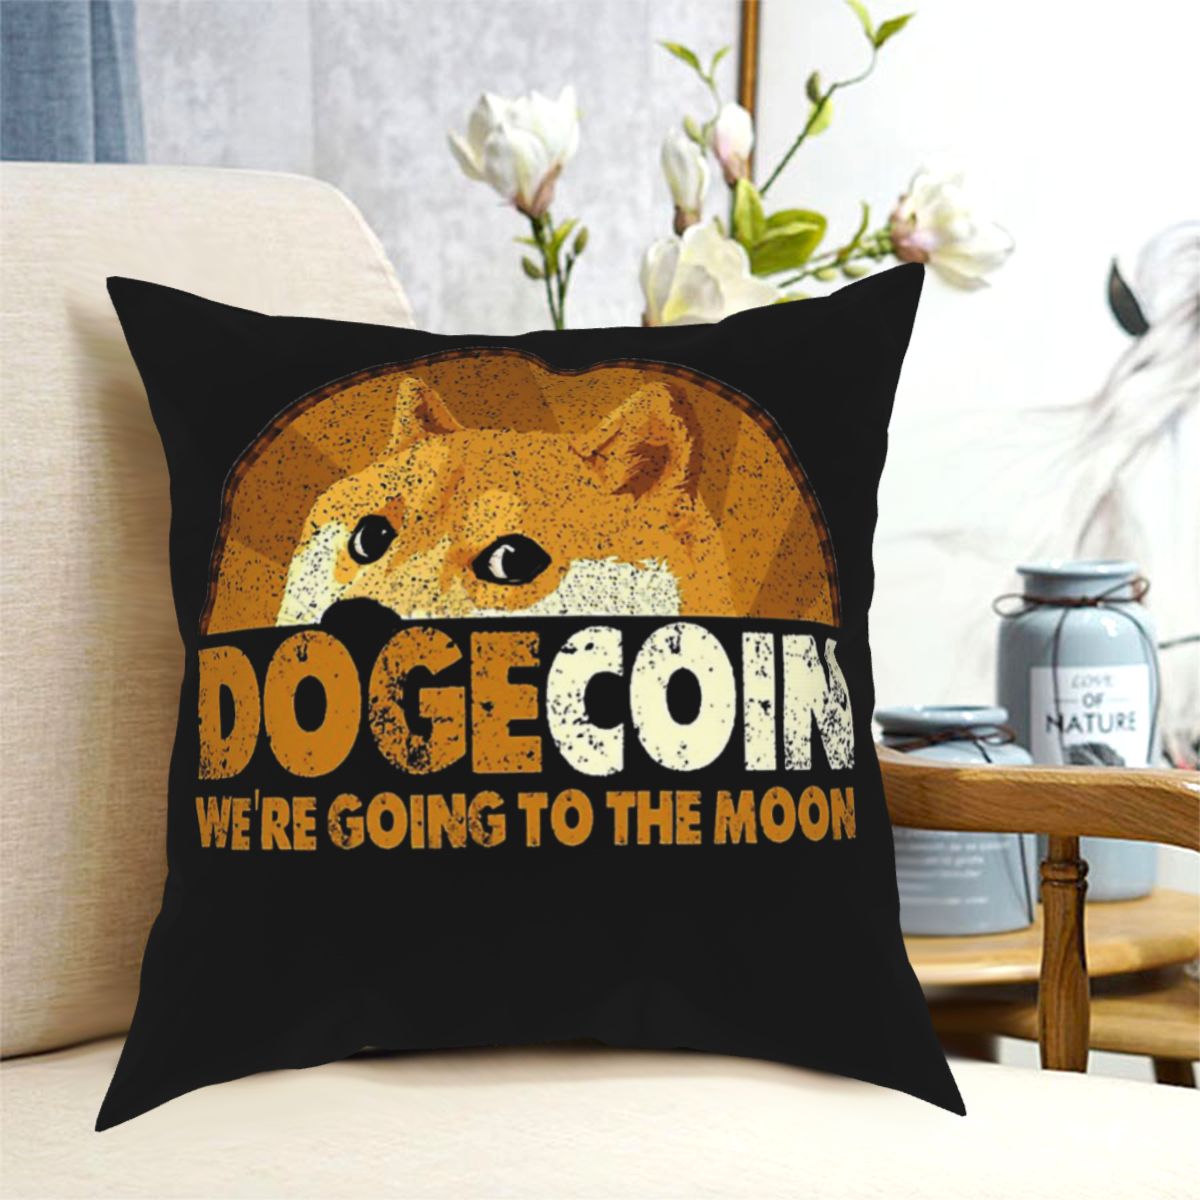 Dogecoin pillowcase